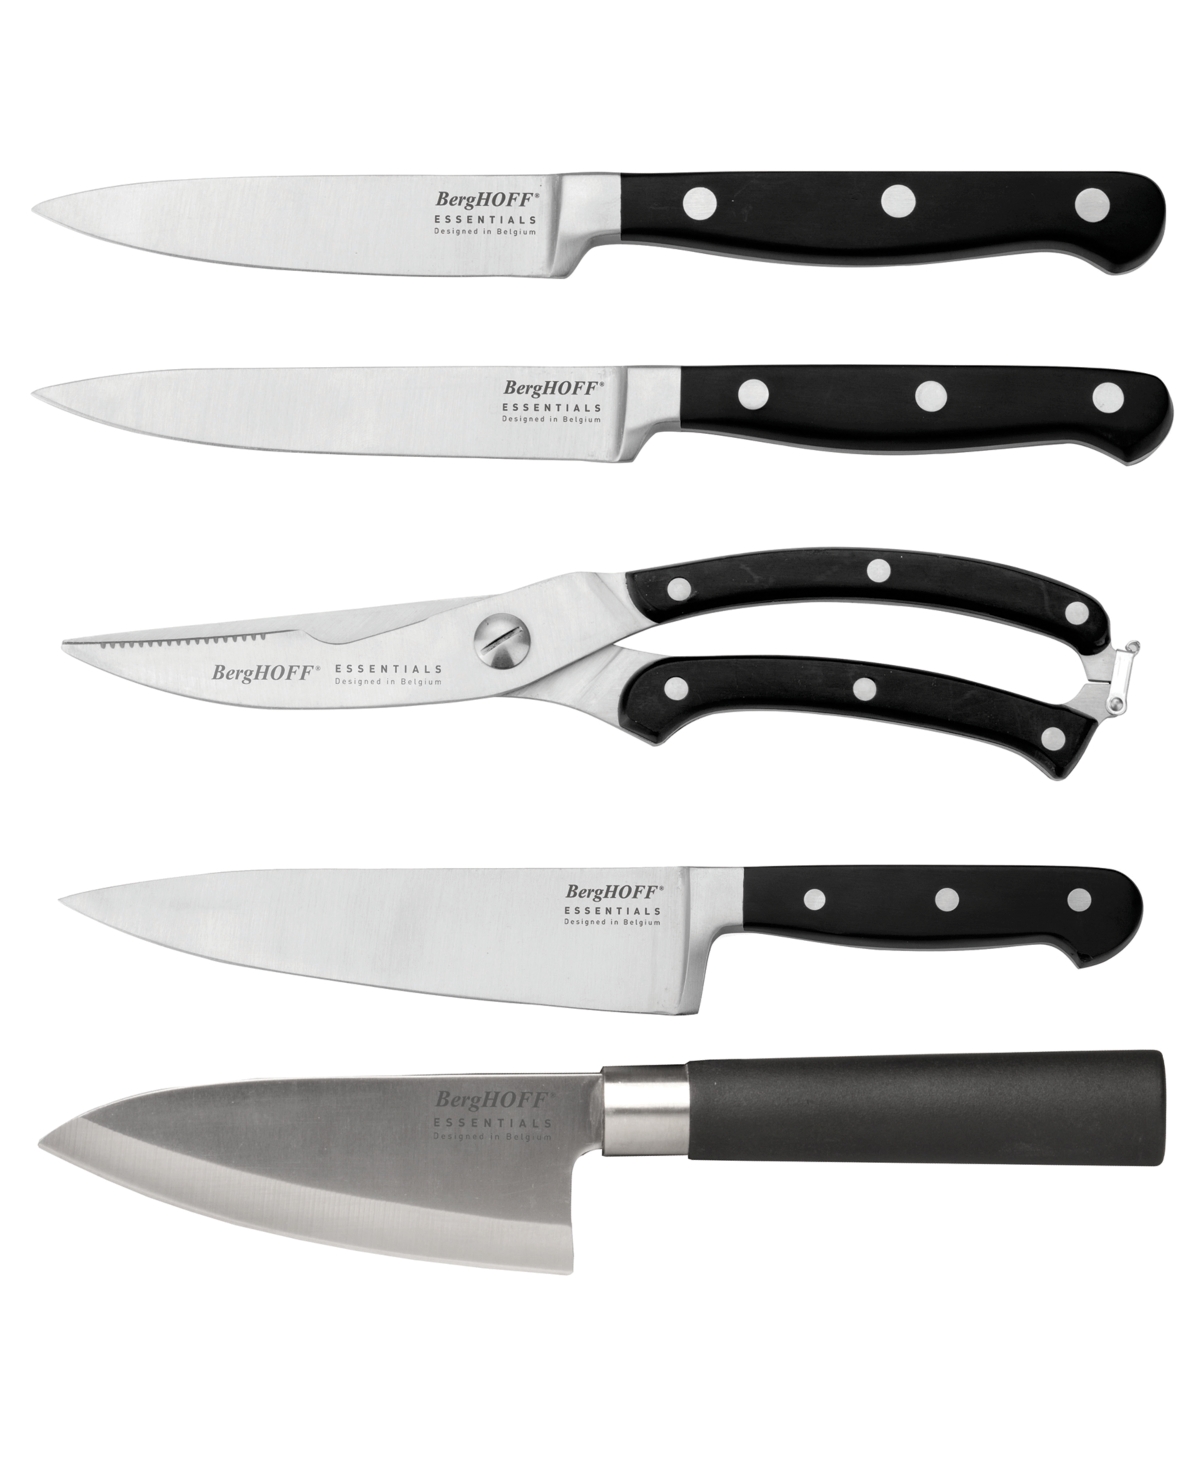 12113837 Essentials Stainless Steel Cutlery Set, 5 Piece sku 12113837